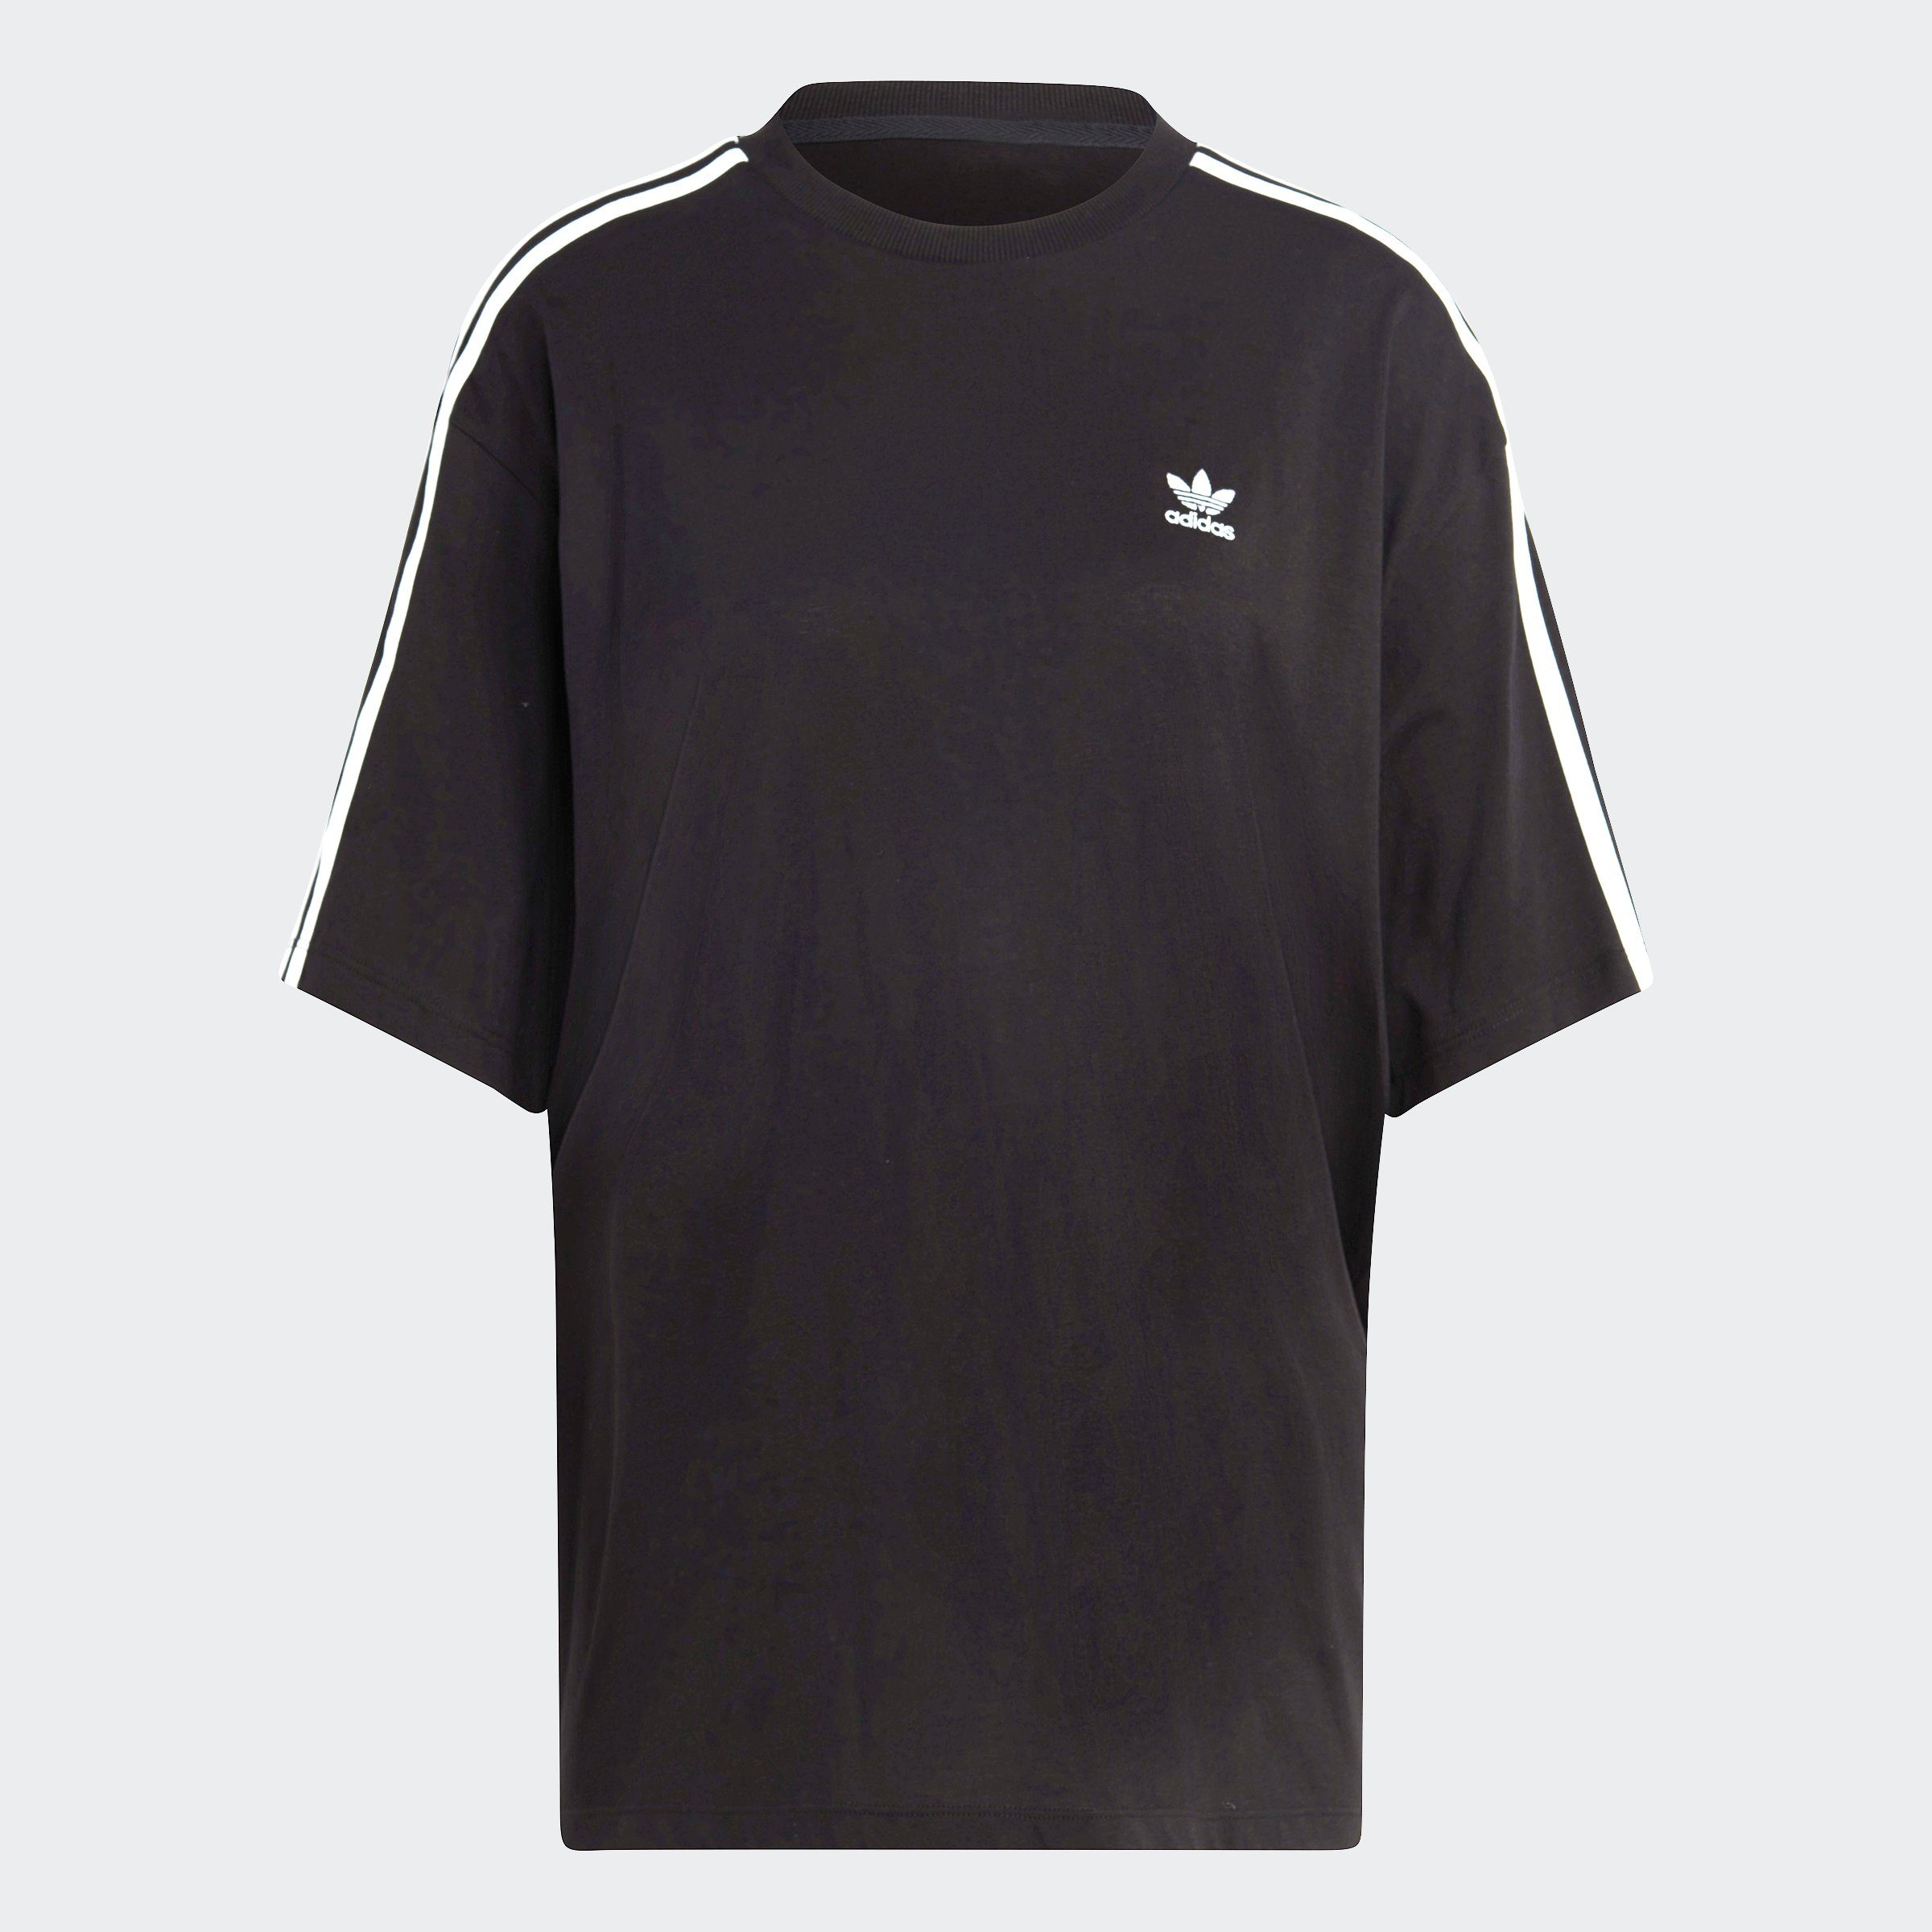 ADICOLOR Originals adidas OVERSIZED CLASSICS Black T-Shirt